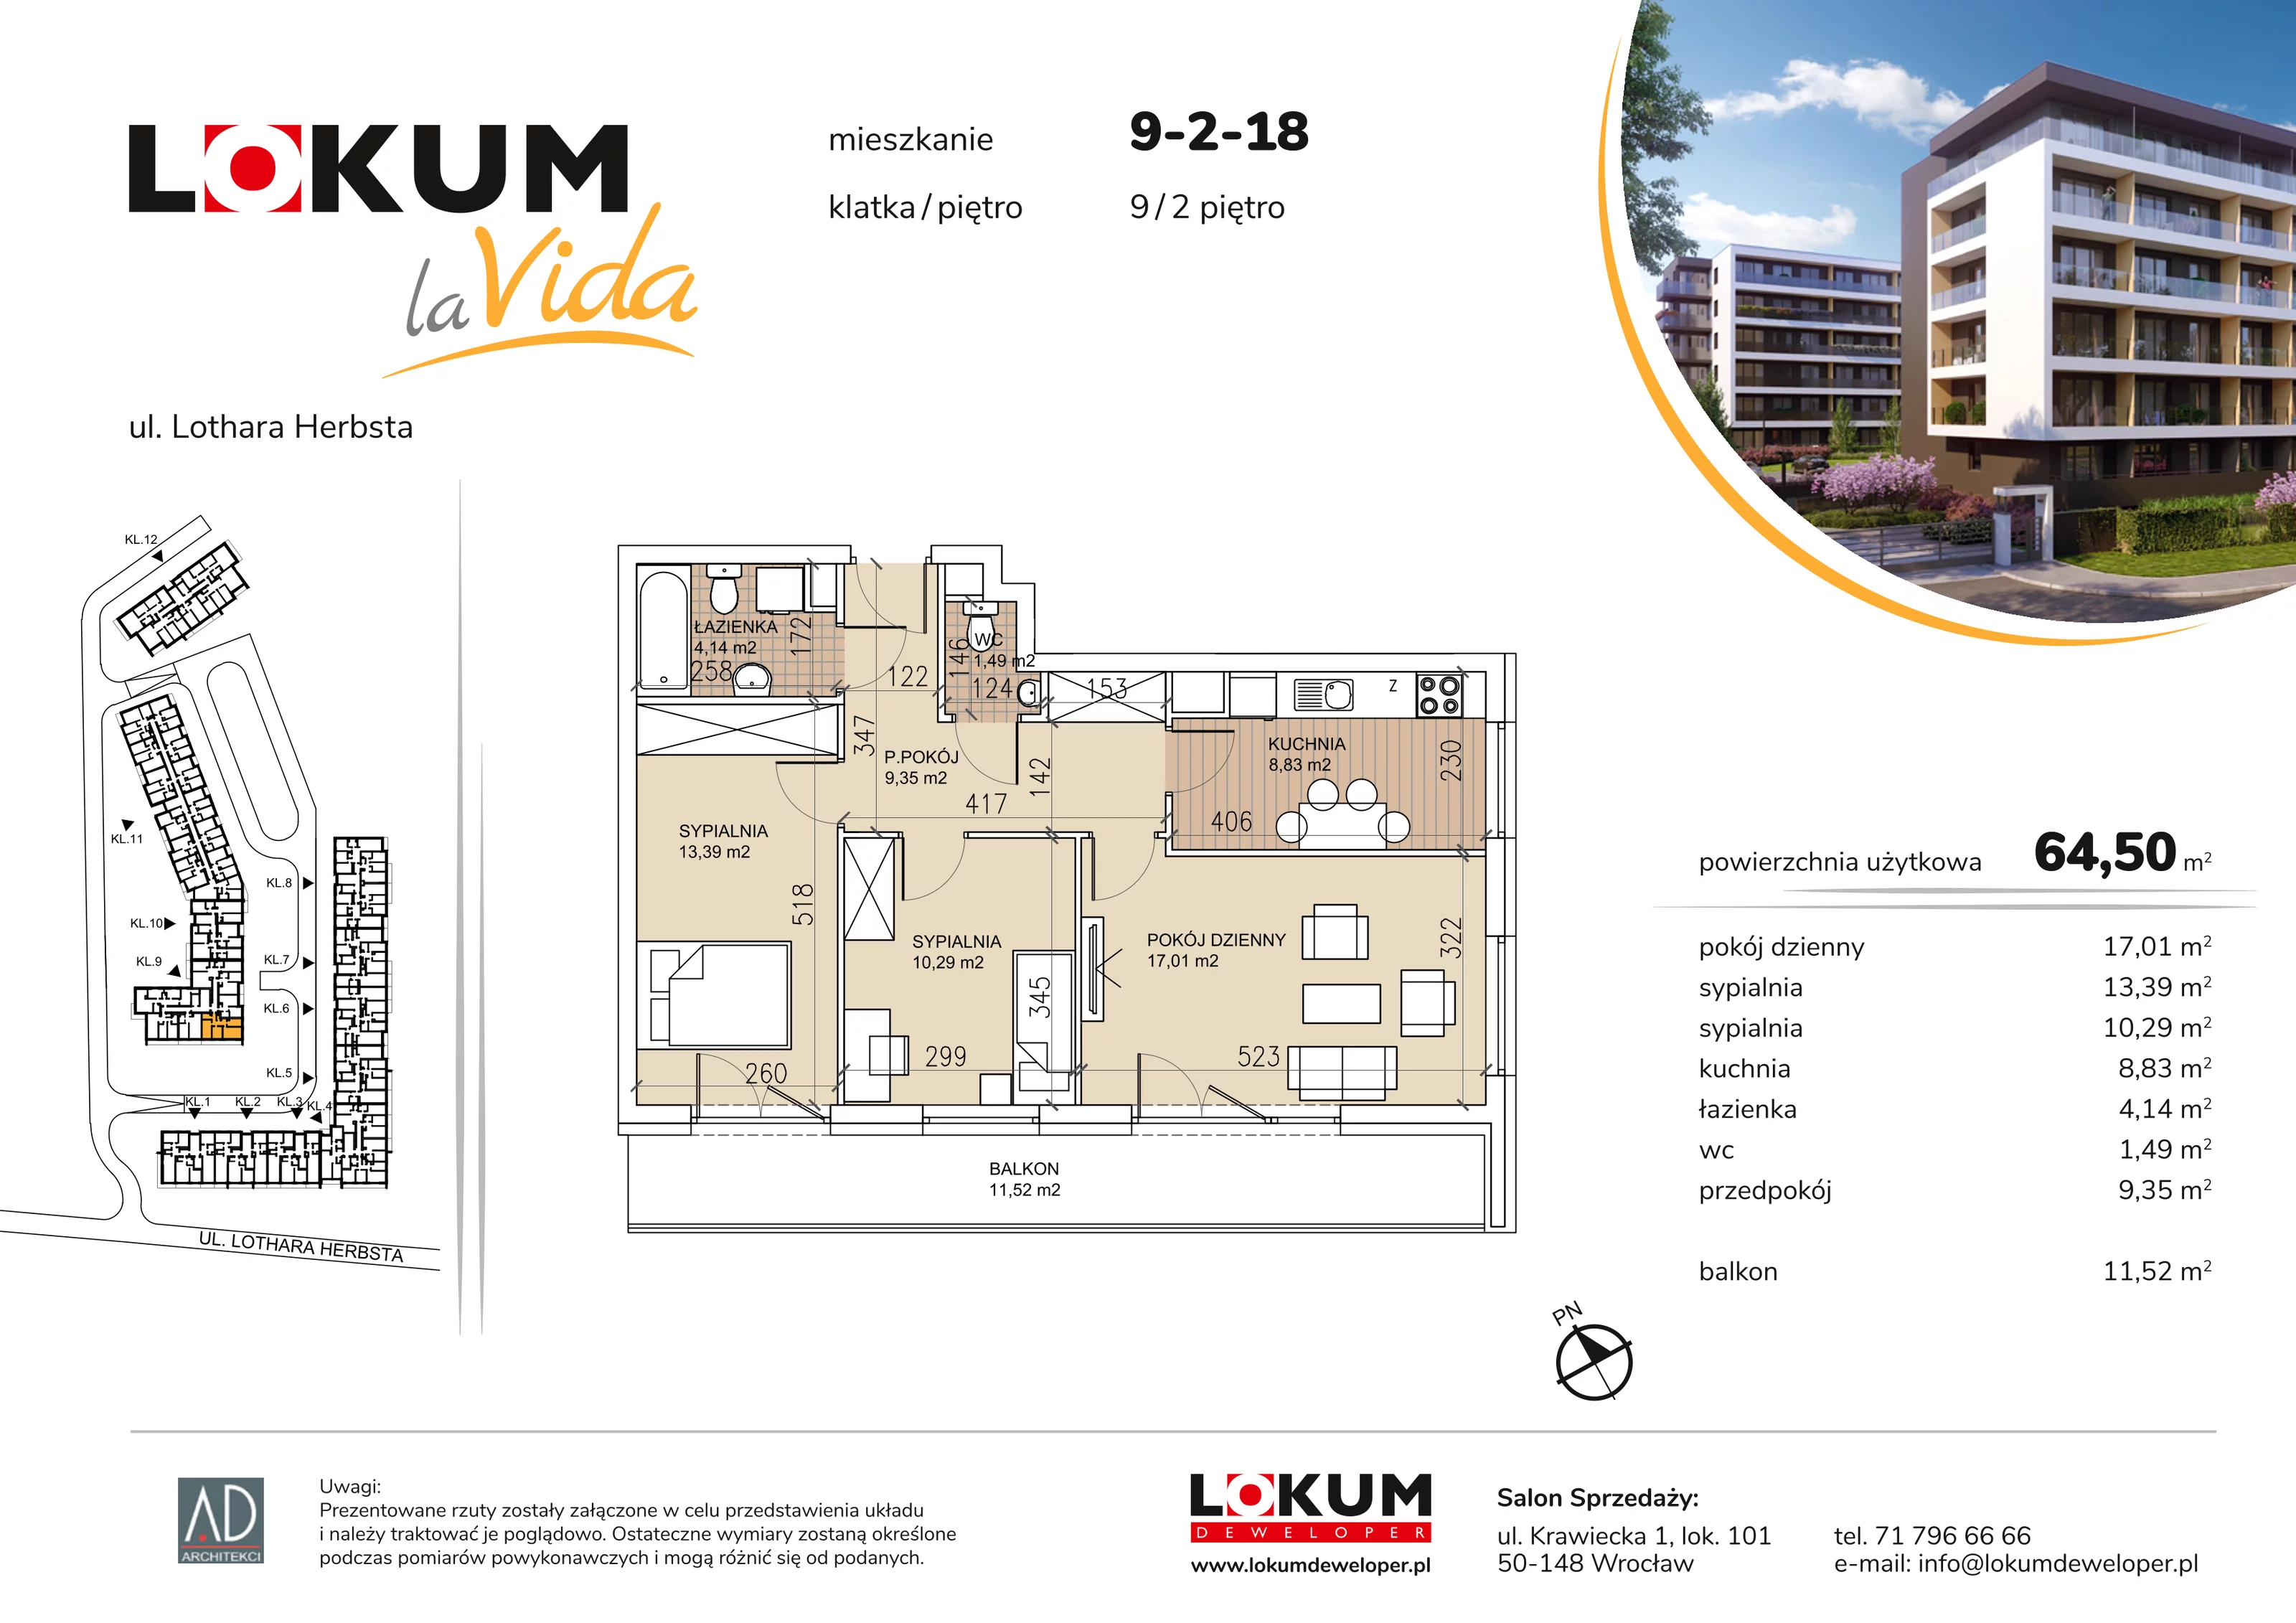 Mieszkanie 64,50 m², piętro 2, oferta nr 9-2-18, Lokum la Vida, Wrocław, Sołtysowice, ul. Lothara Herbsta